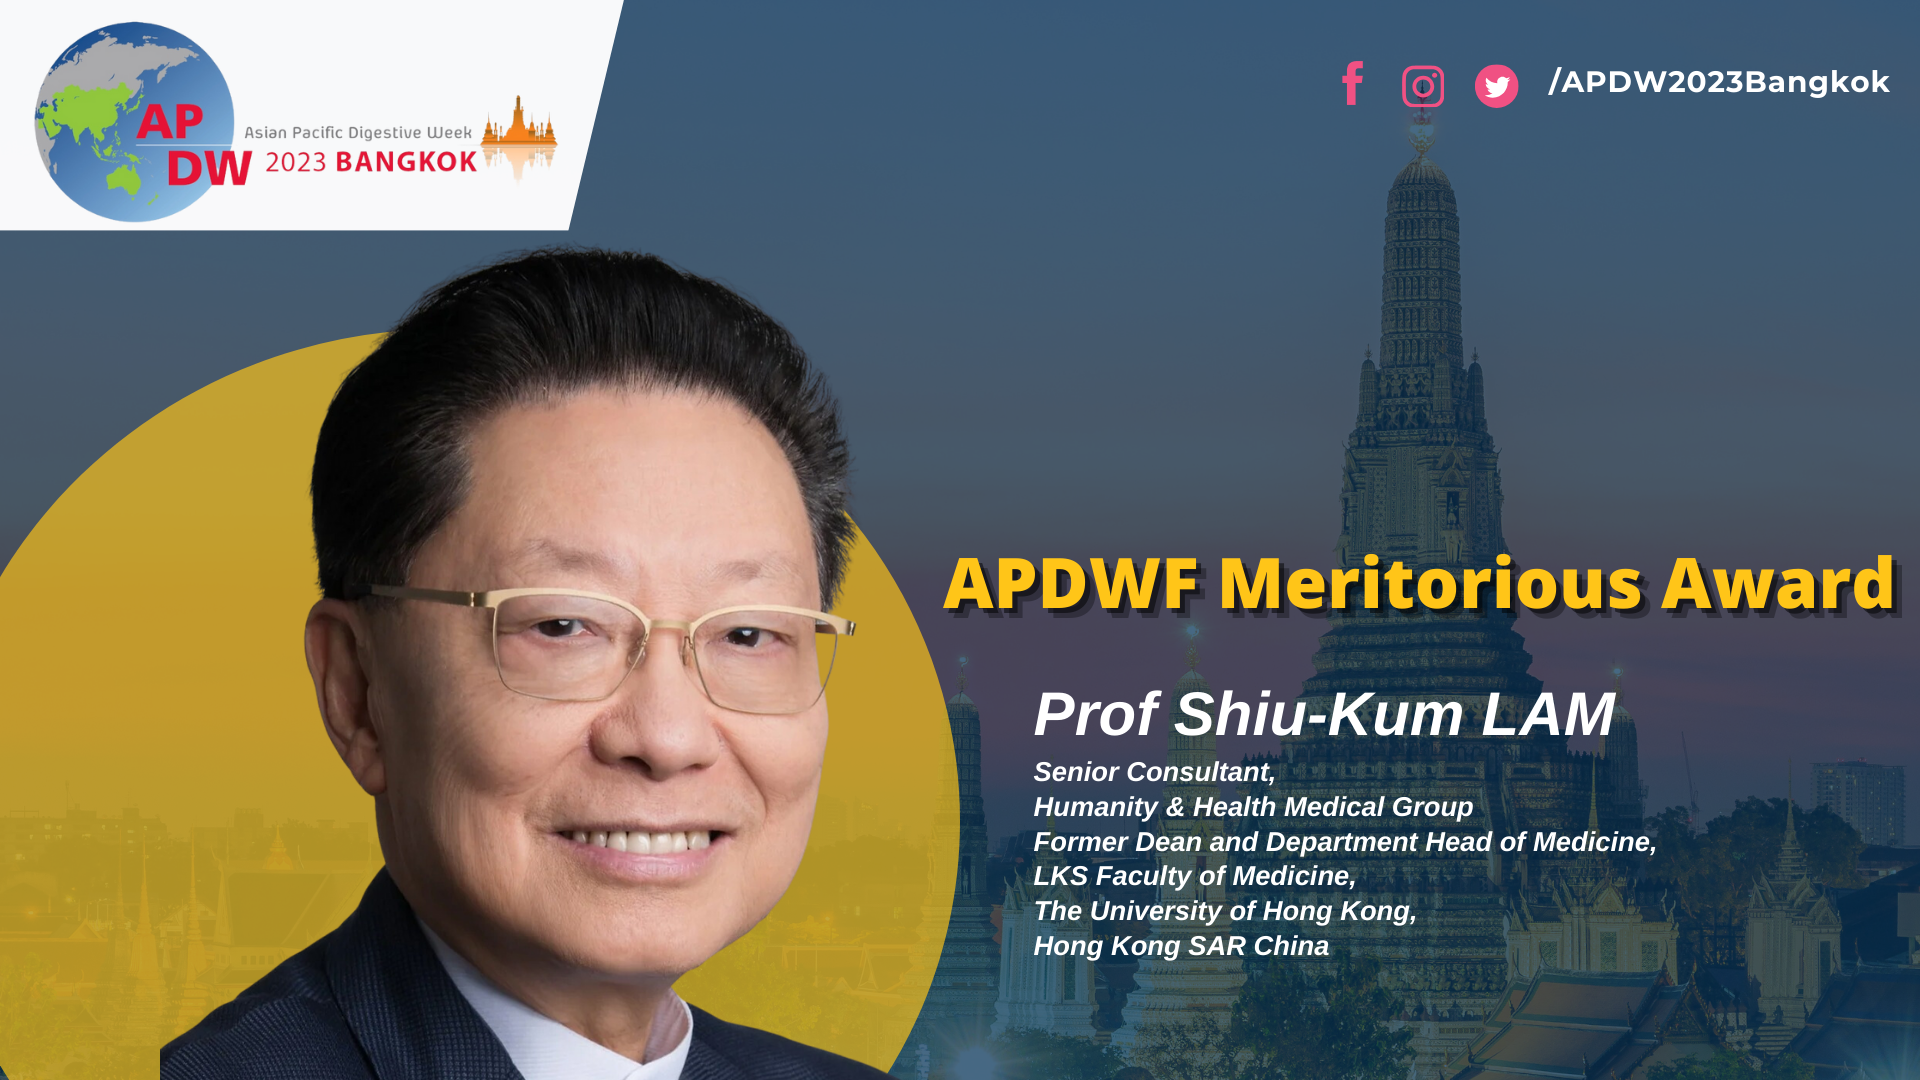 APDWF Meritorious Award